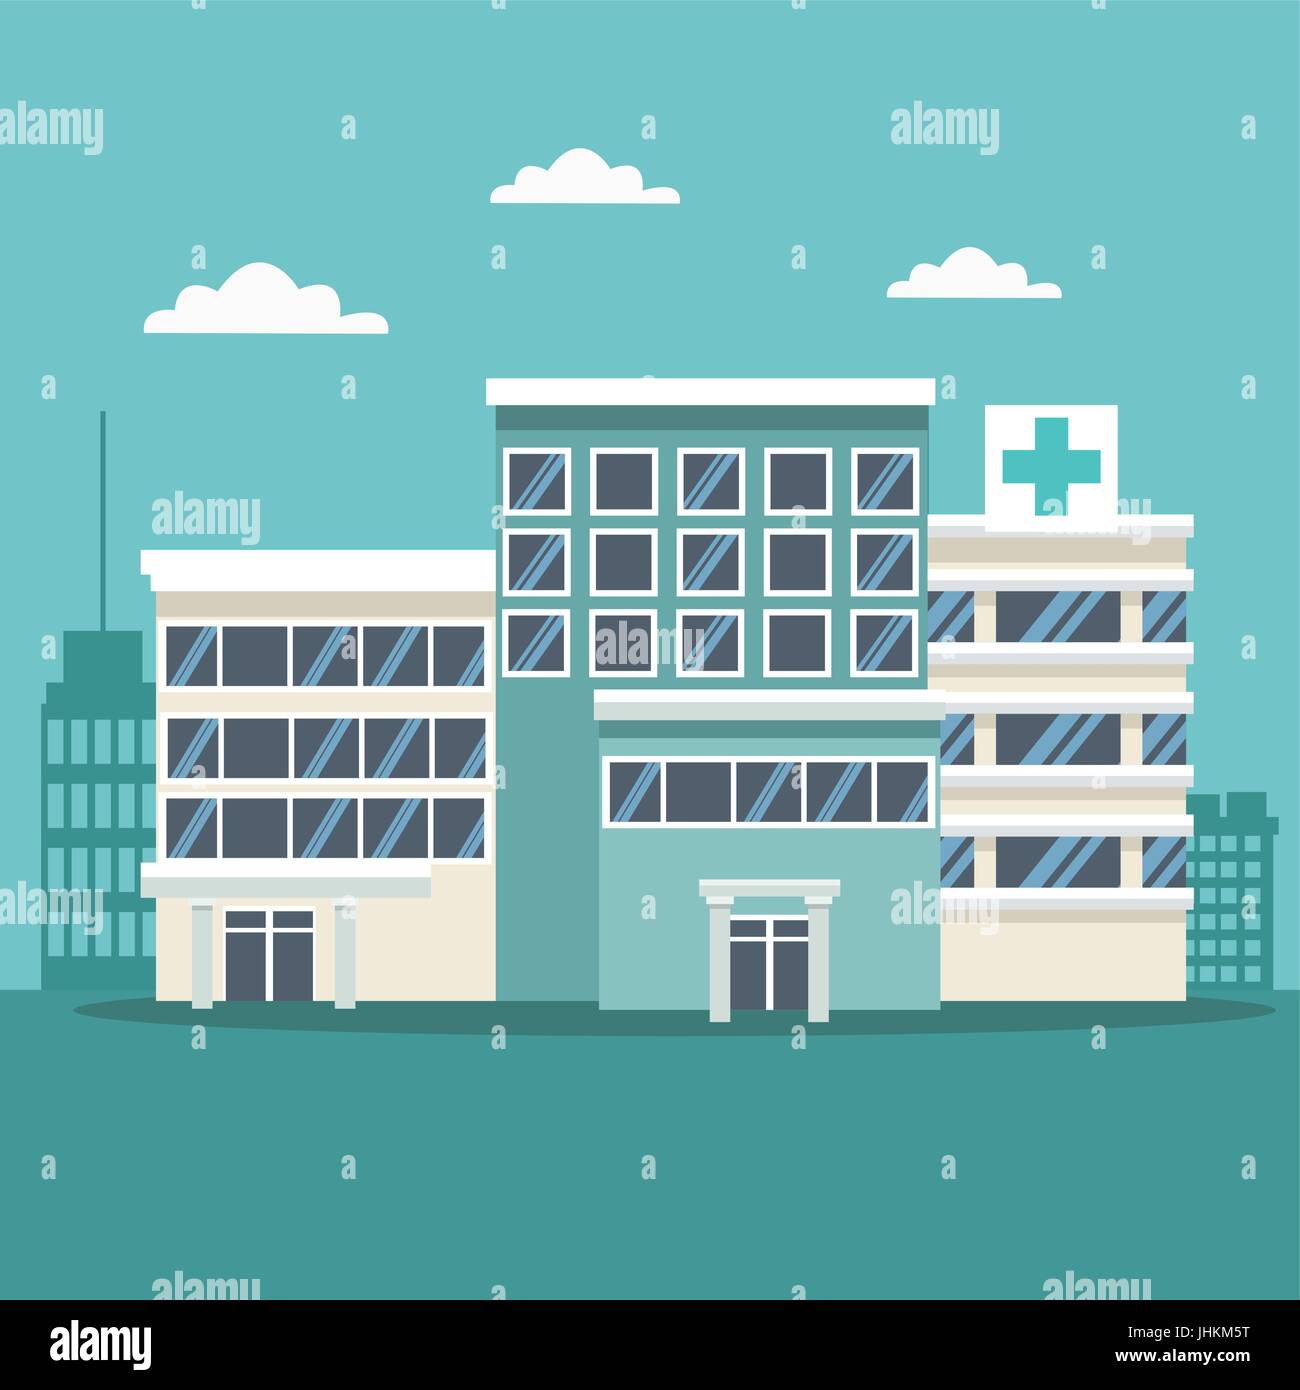 Stadt-Landschaft Szenenhintergrund mit Gebäuden und Krankenhäusern Stock Vektor